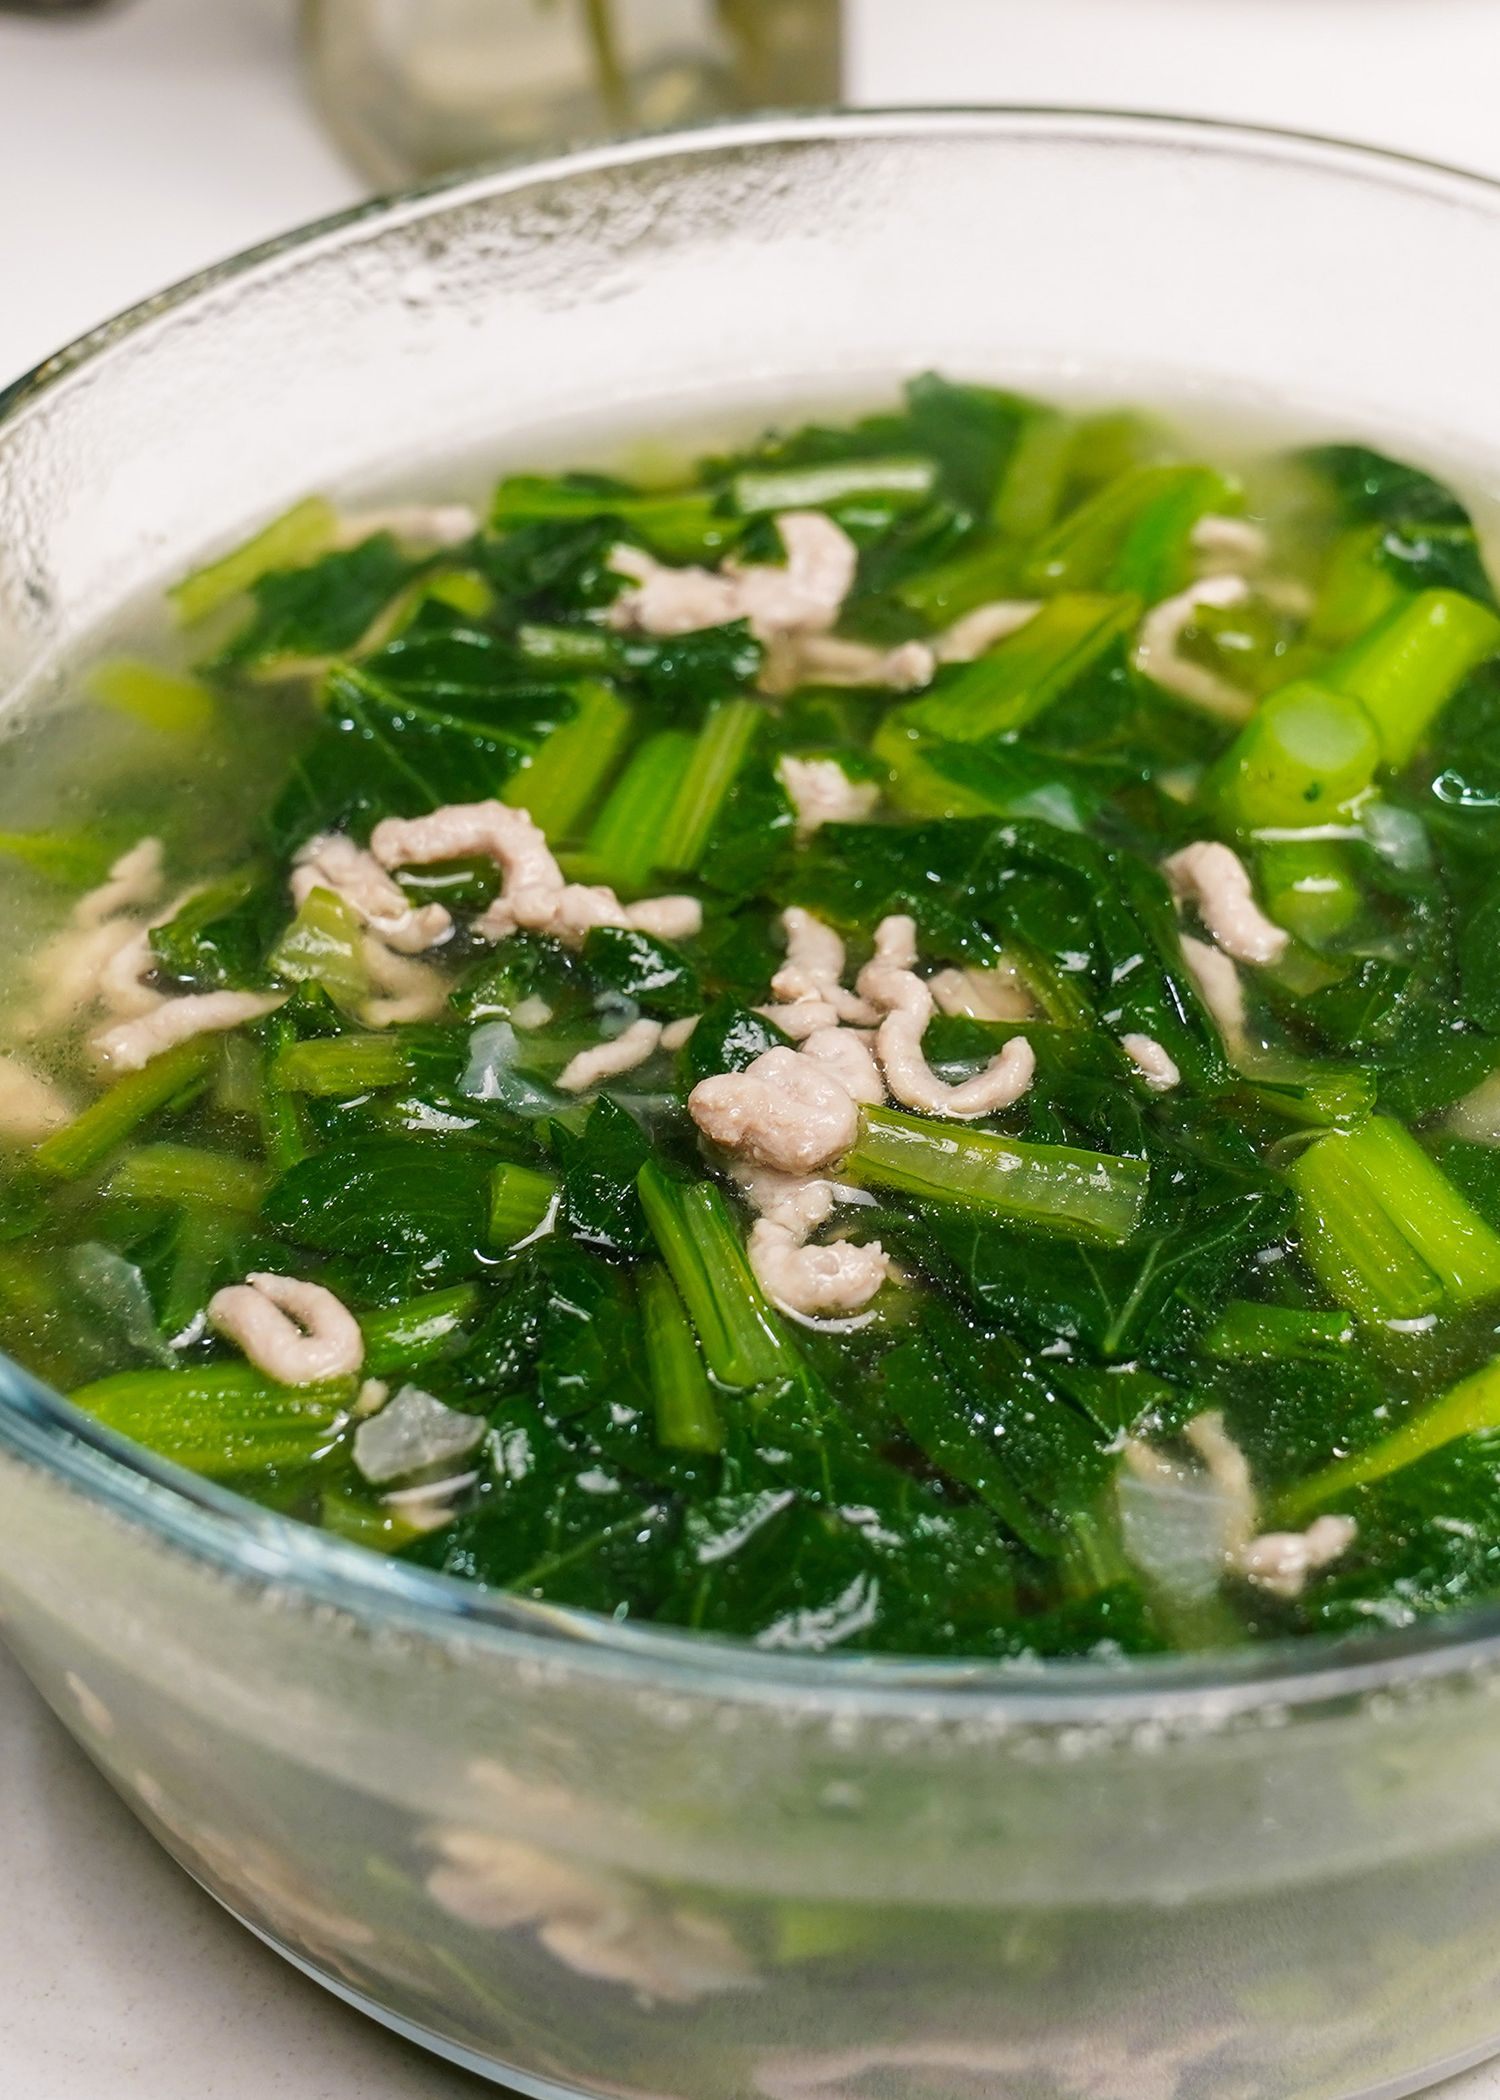 Bạn đã hiểu phương pháp nấu nướng canh hàu rau xanh cải giải sức nóng mang đến ngày hè chưa?